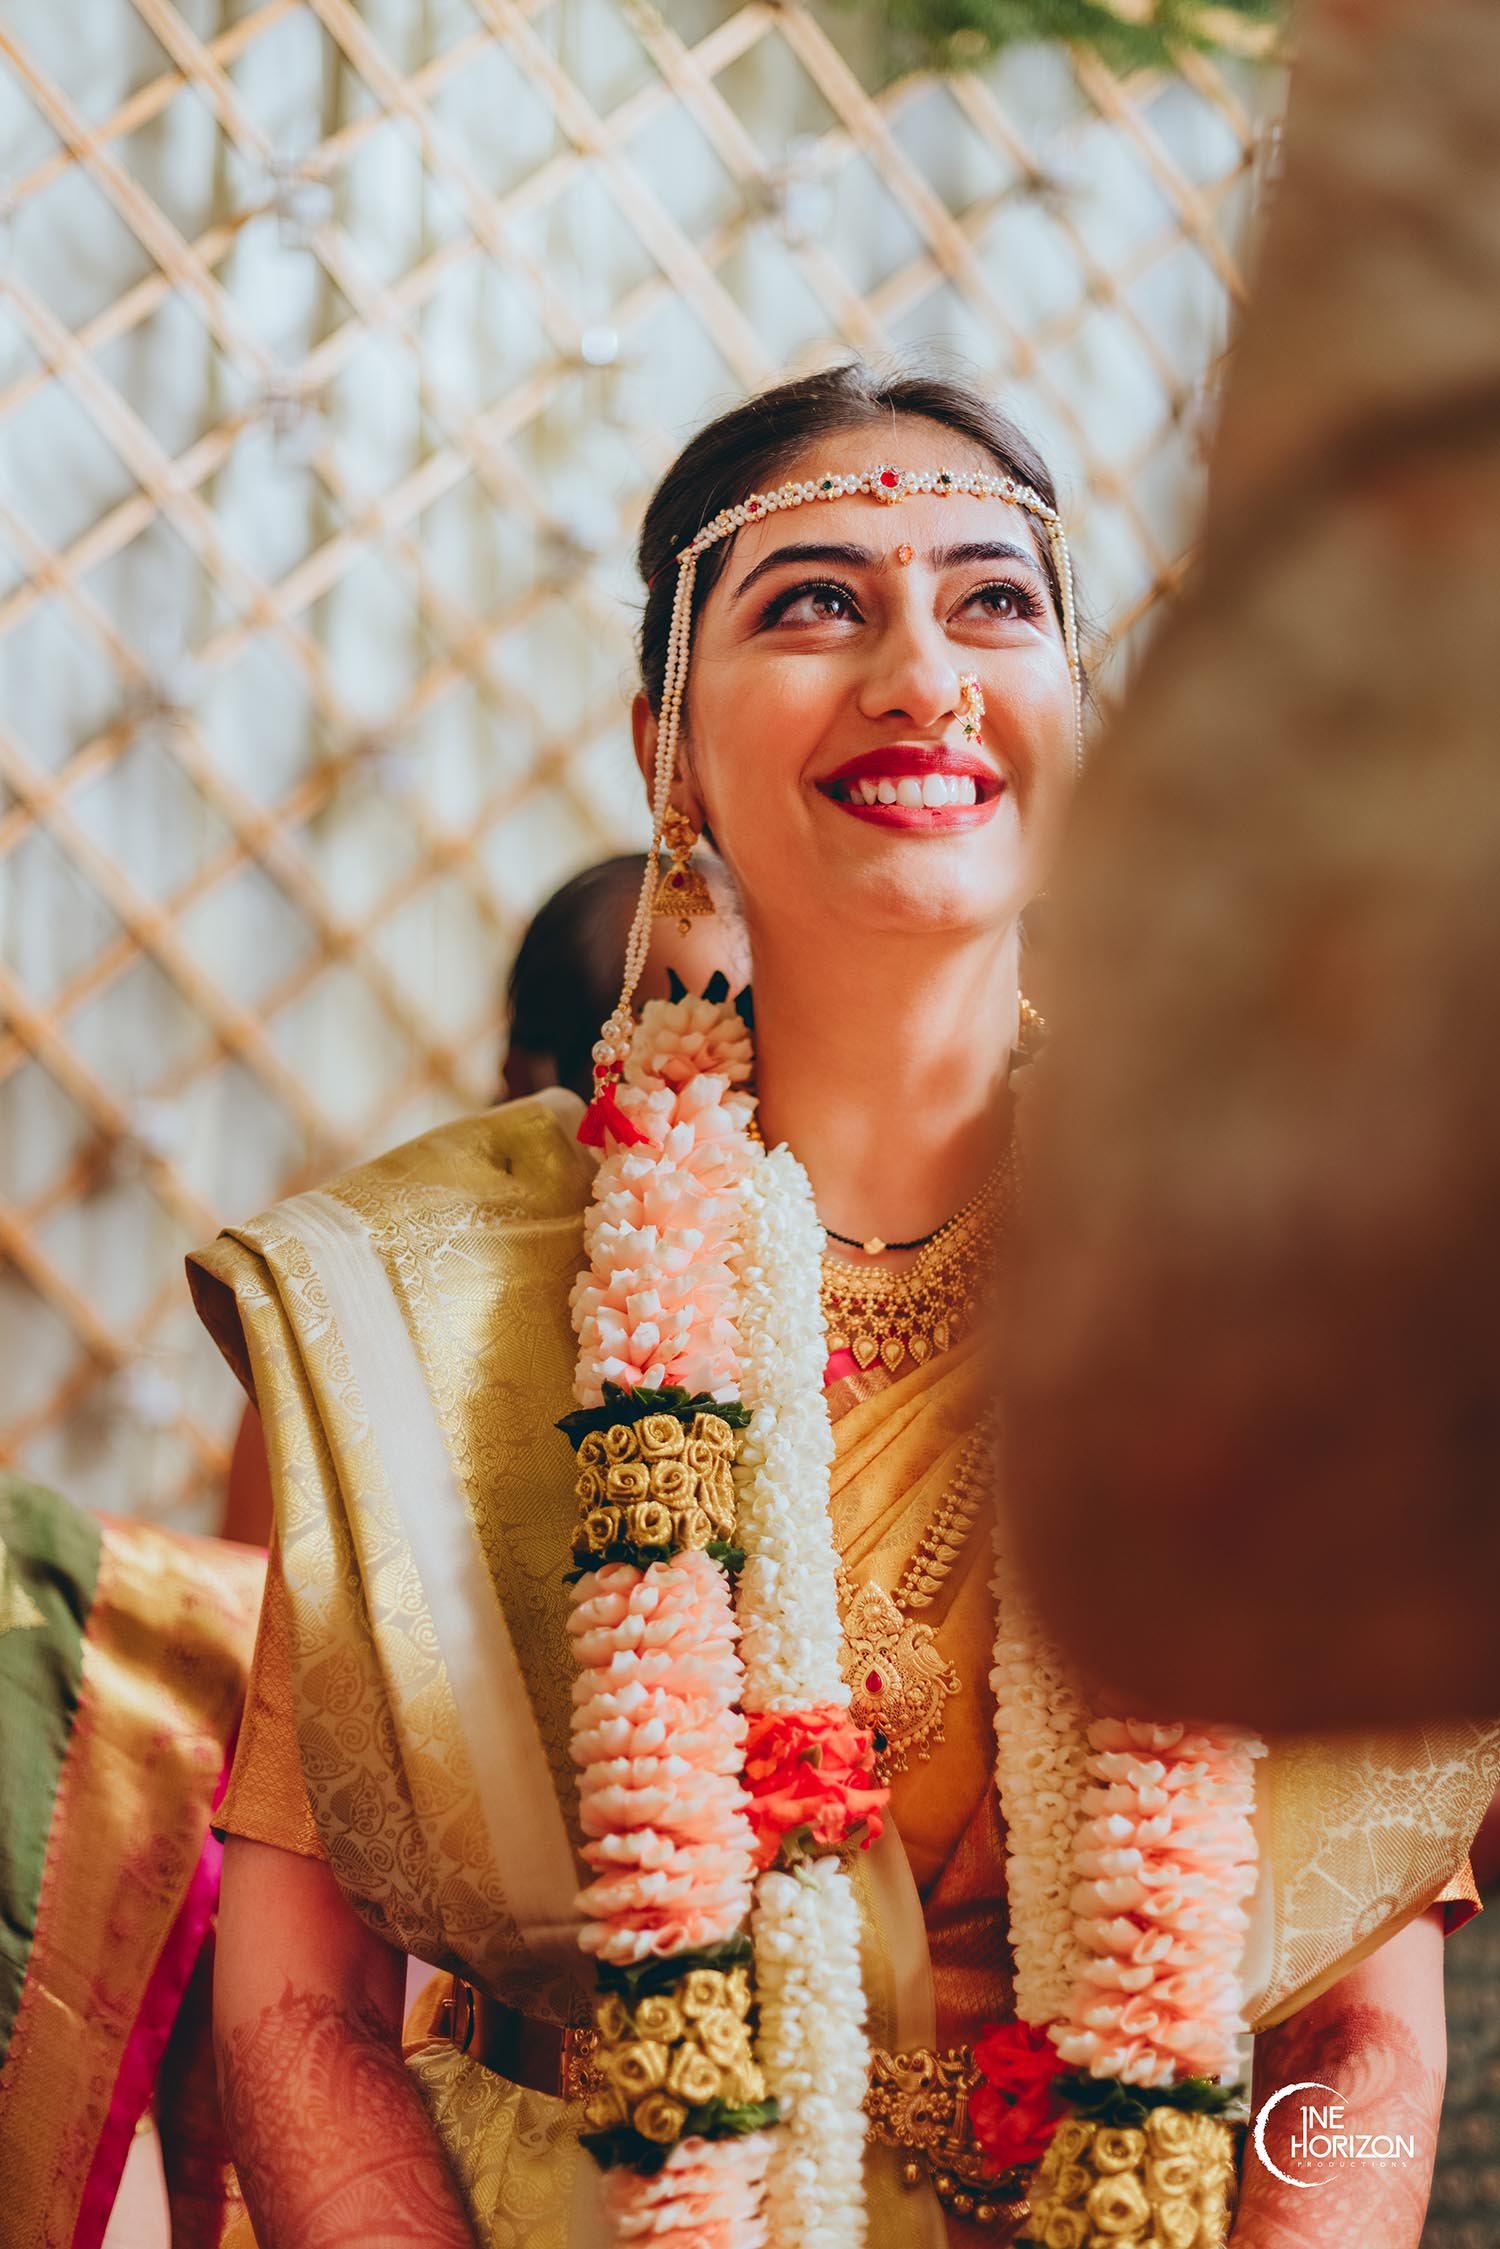 Marathi look | nauvari saree | pose | Marathi jewellery | Marathi wedding | Bride  poses, Bride photos poses, Bride photography poses